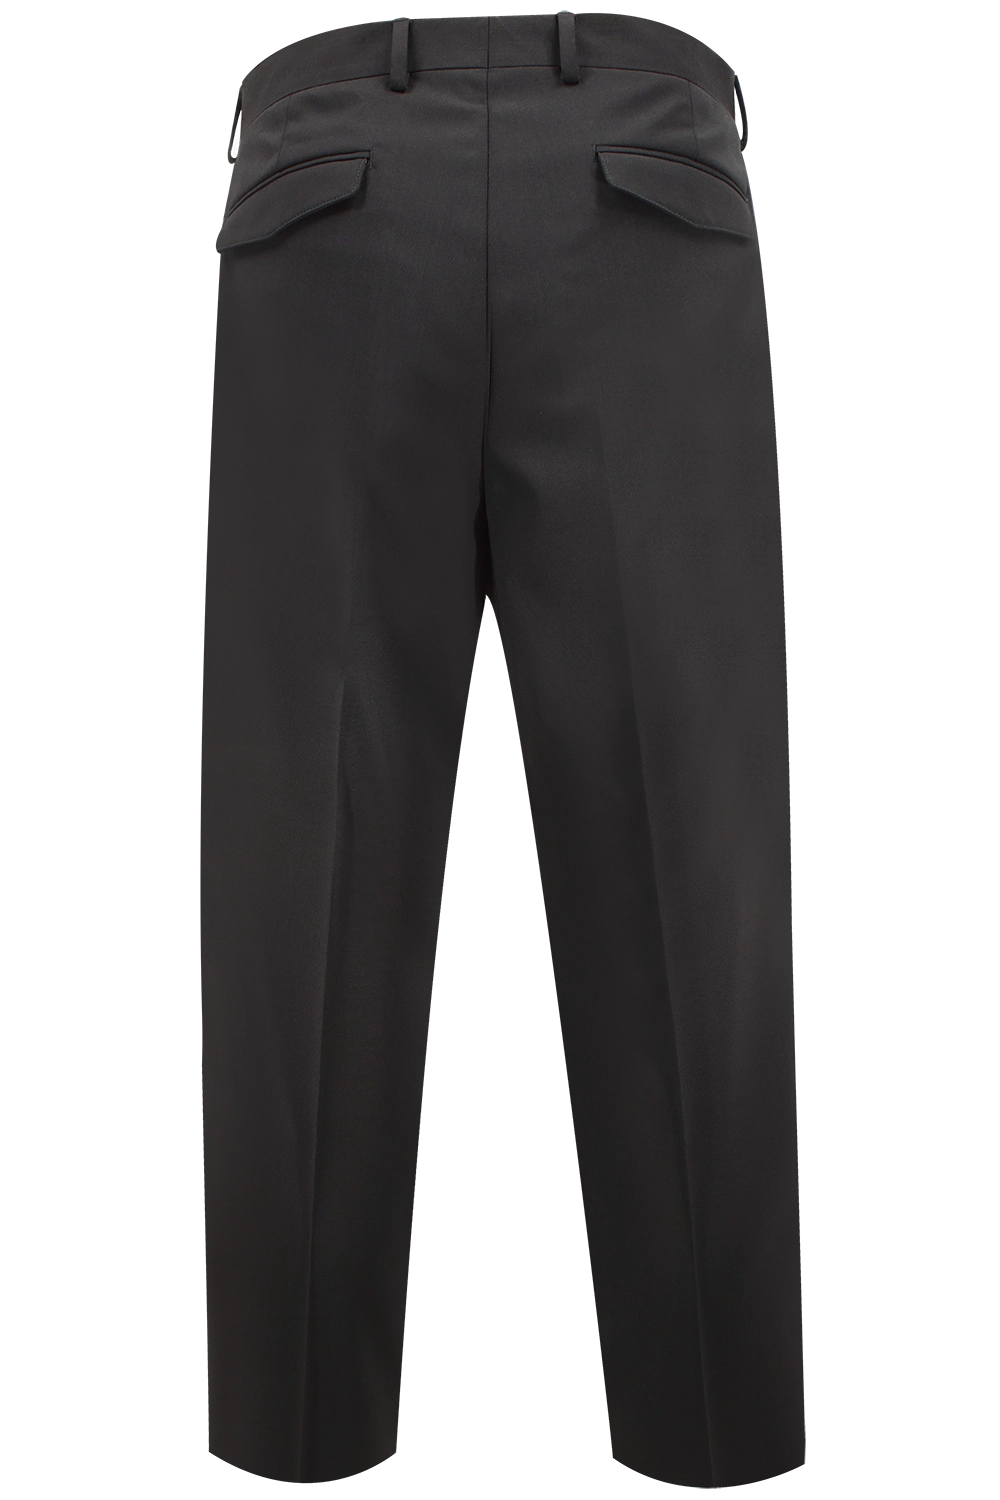 Pantalone Japan in tela di lana nero retro